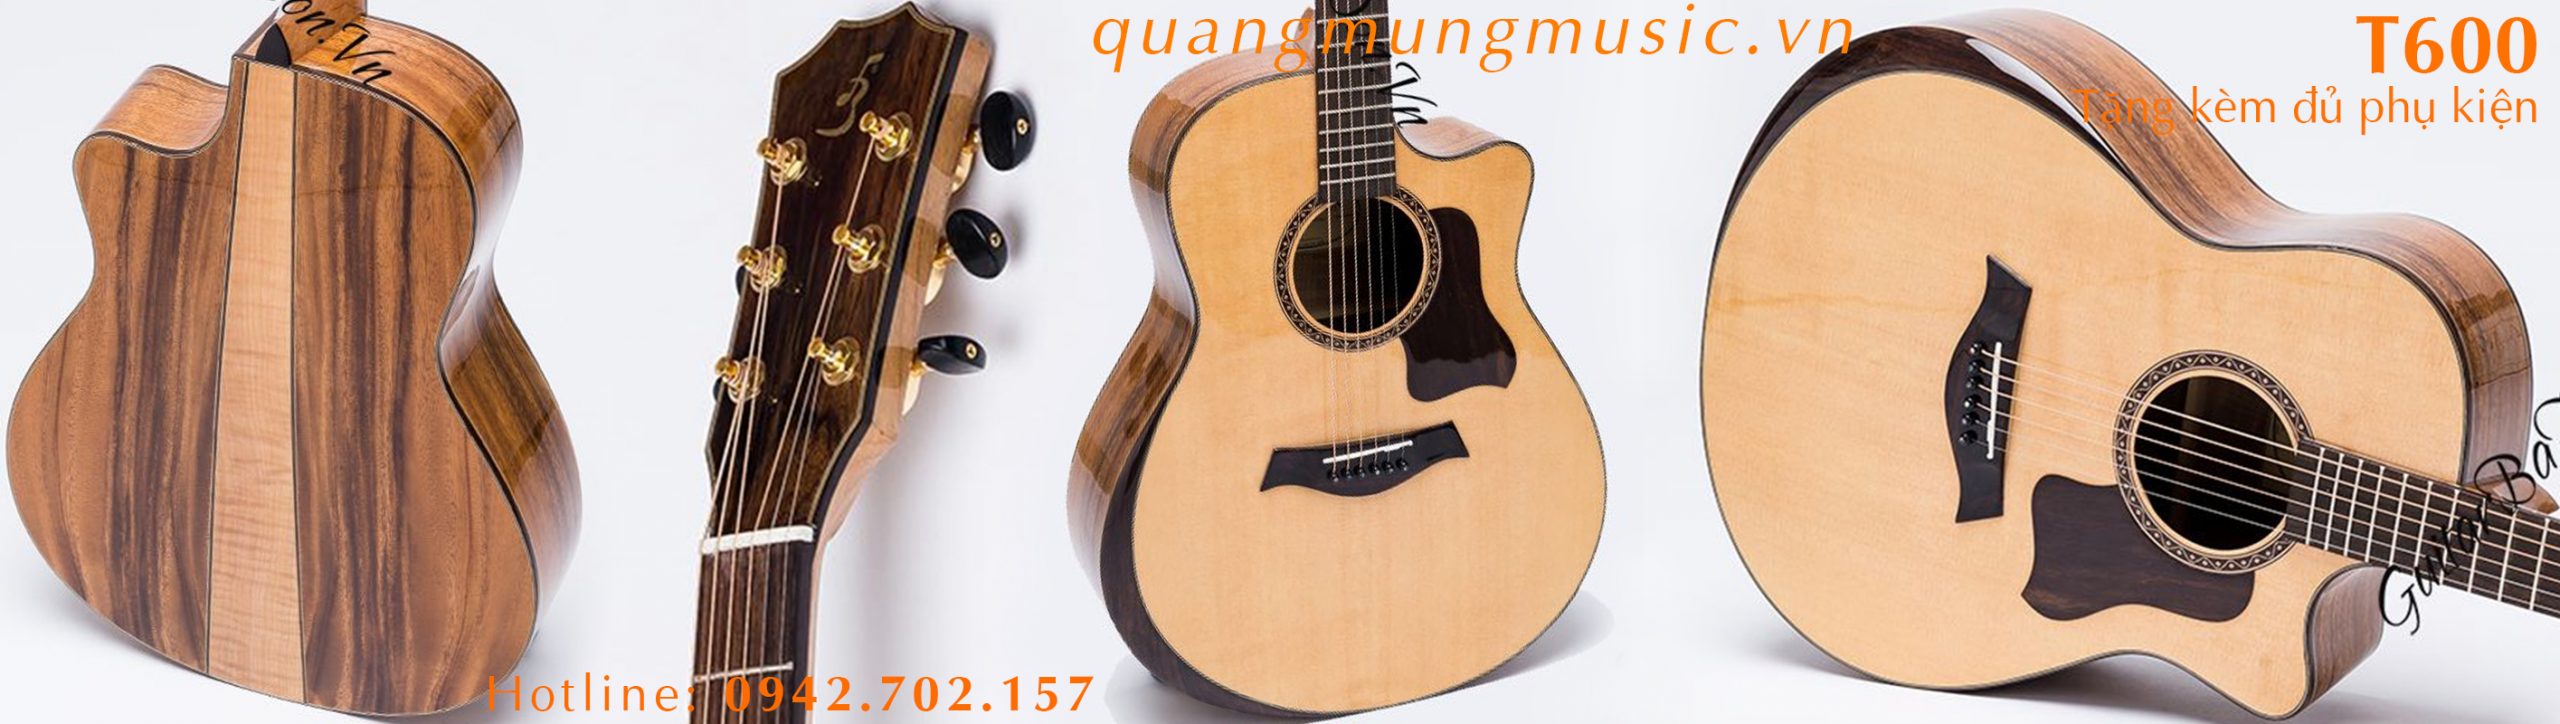 dan-guitar-acoustic-ba-don-t600